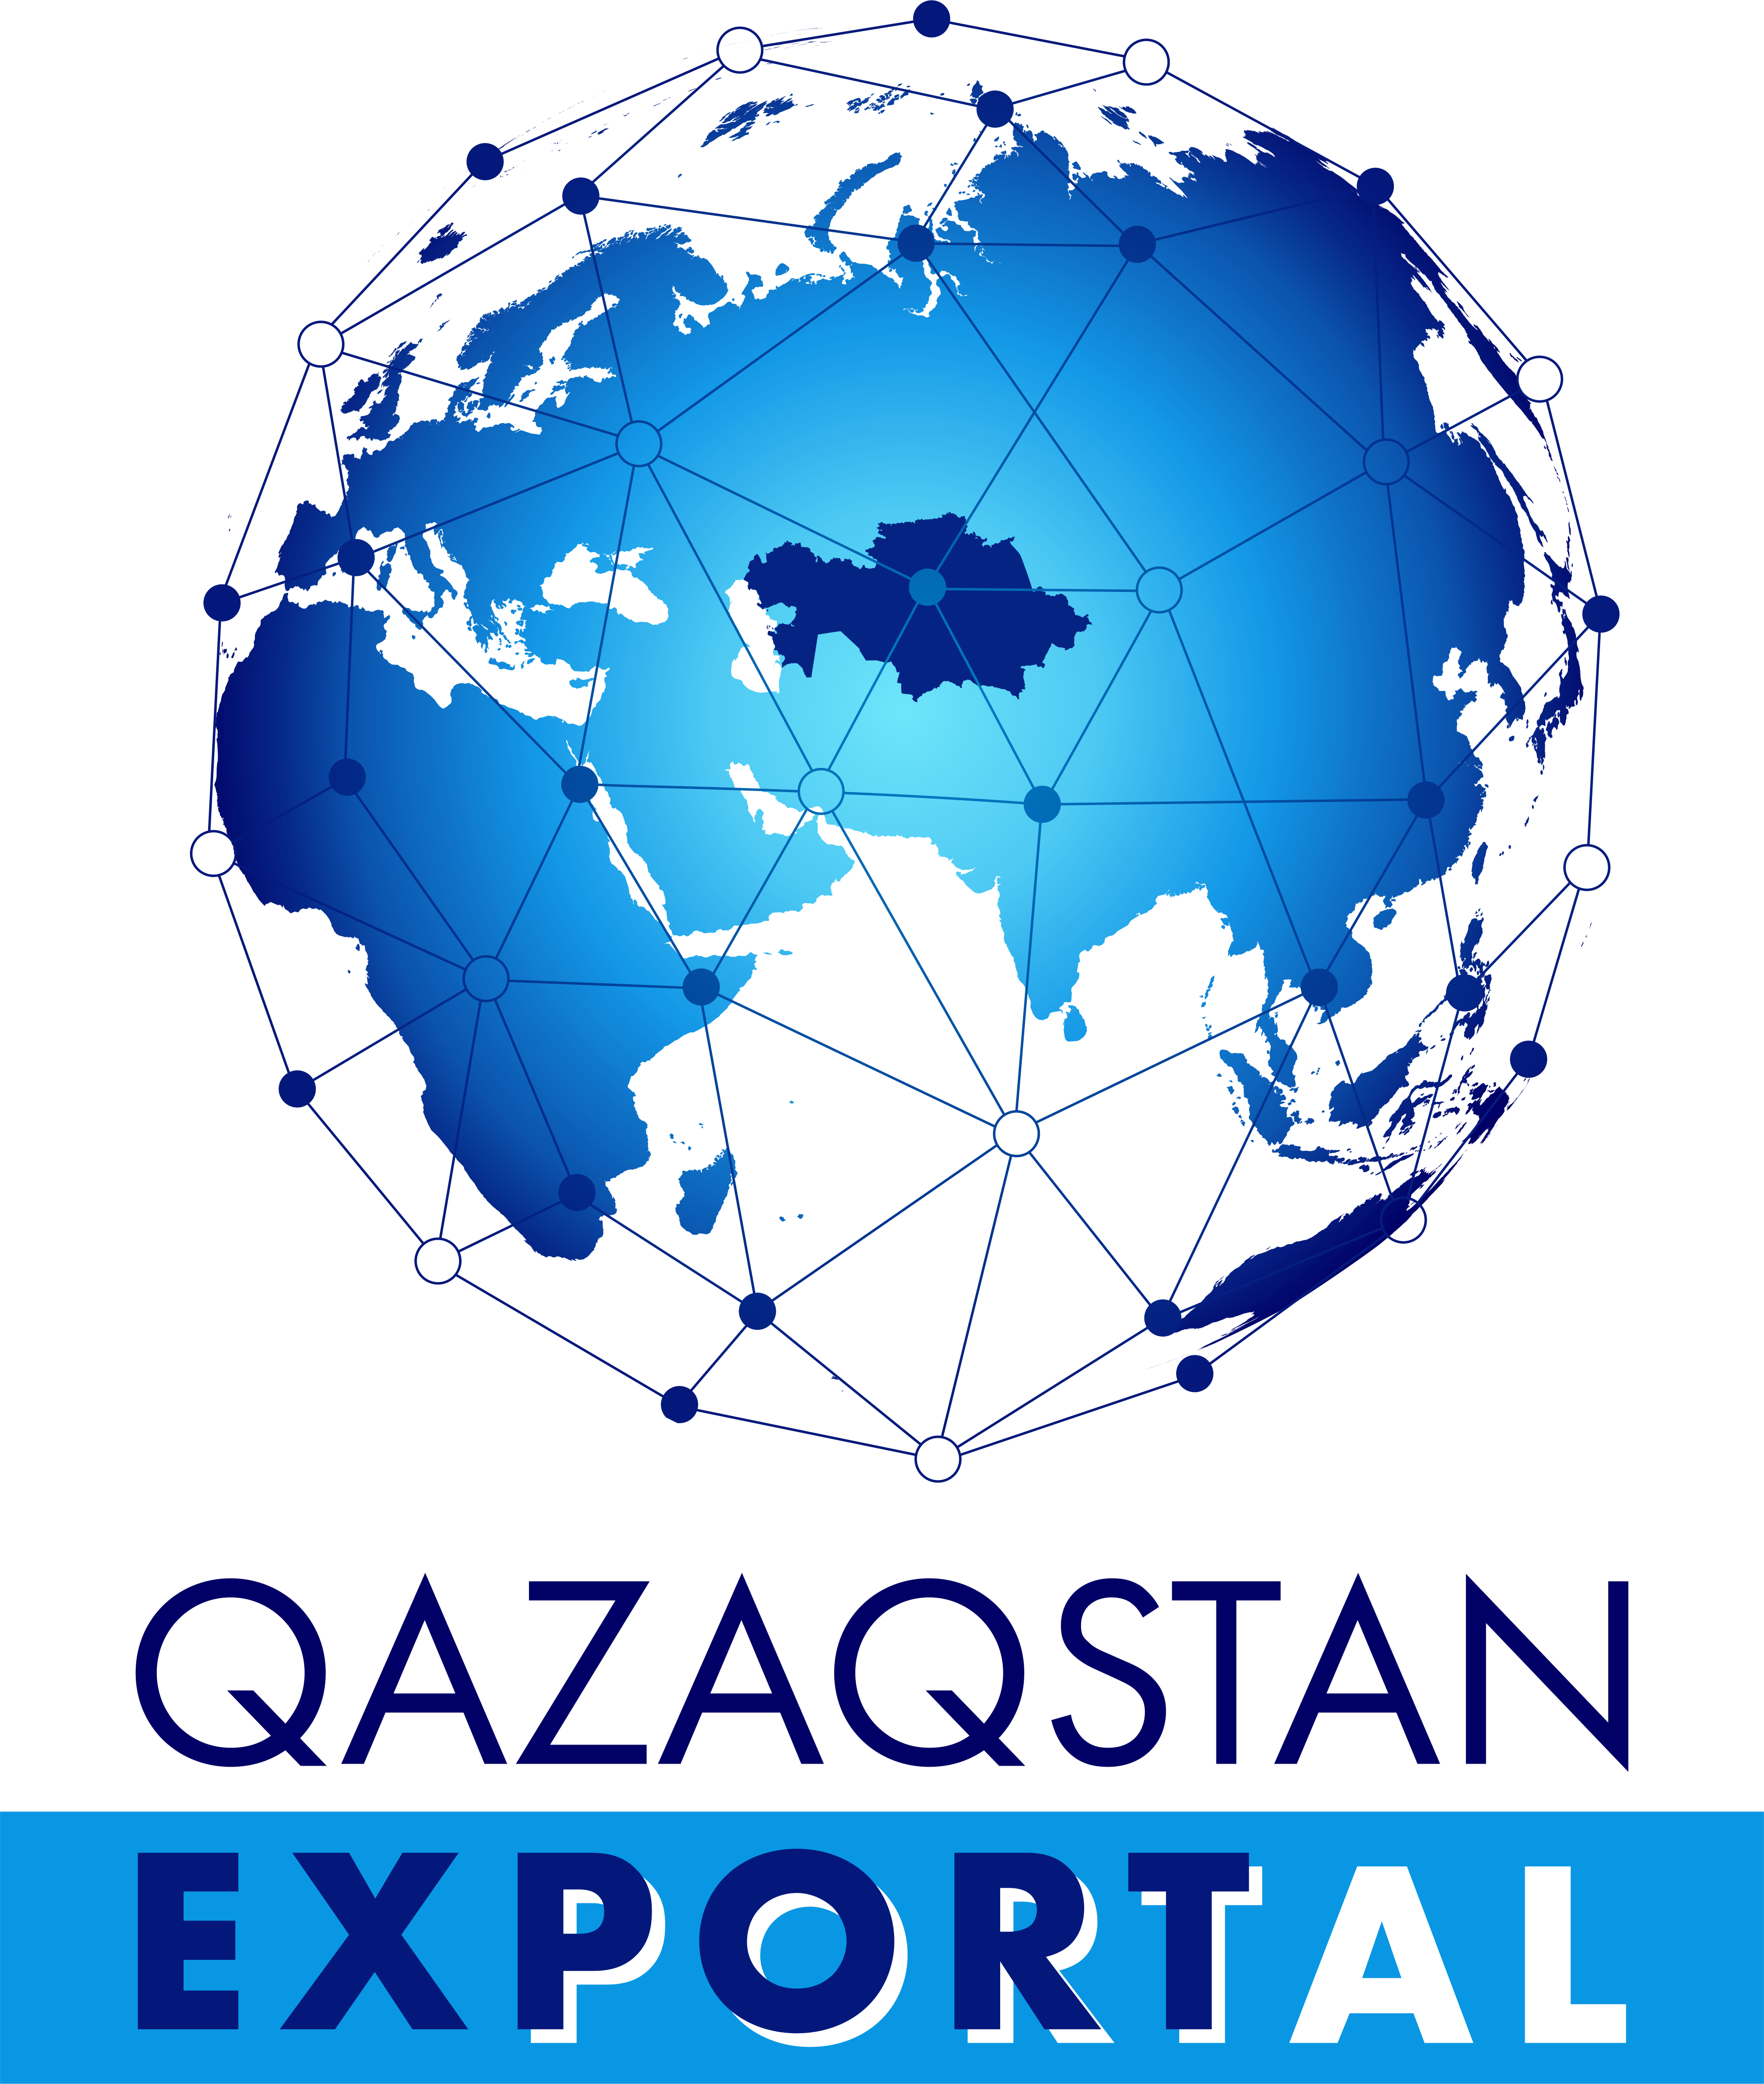 QAZAQSTAN EXPORTAL